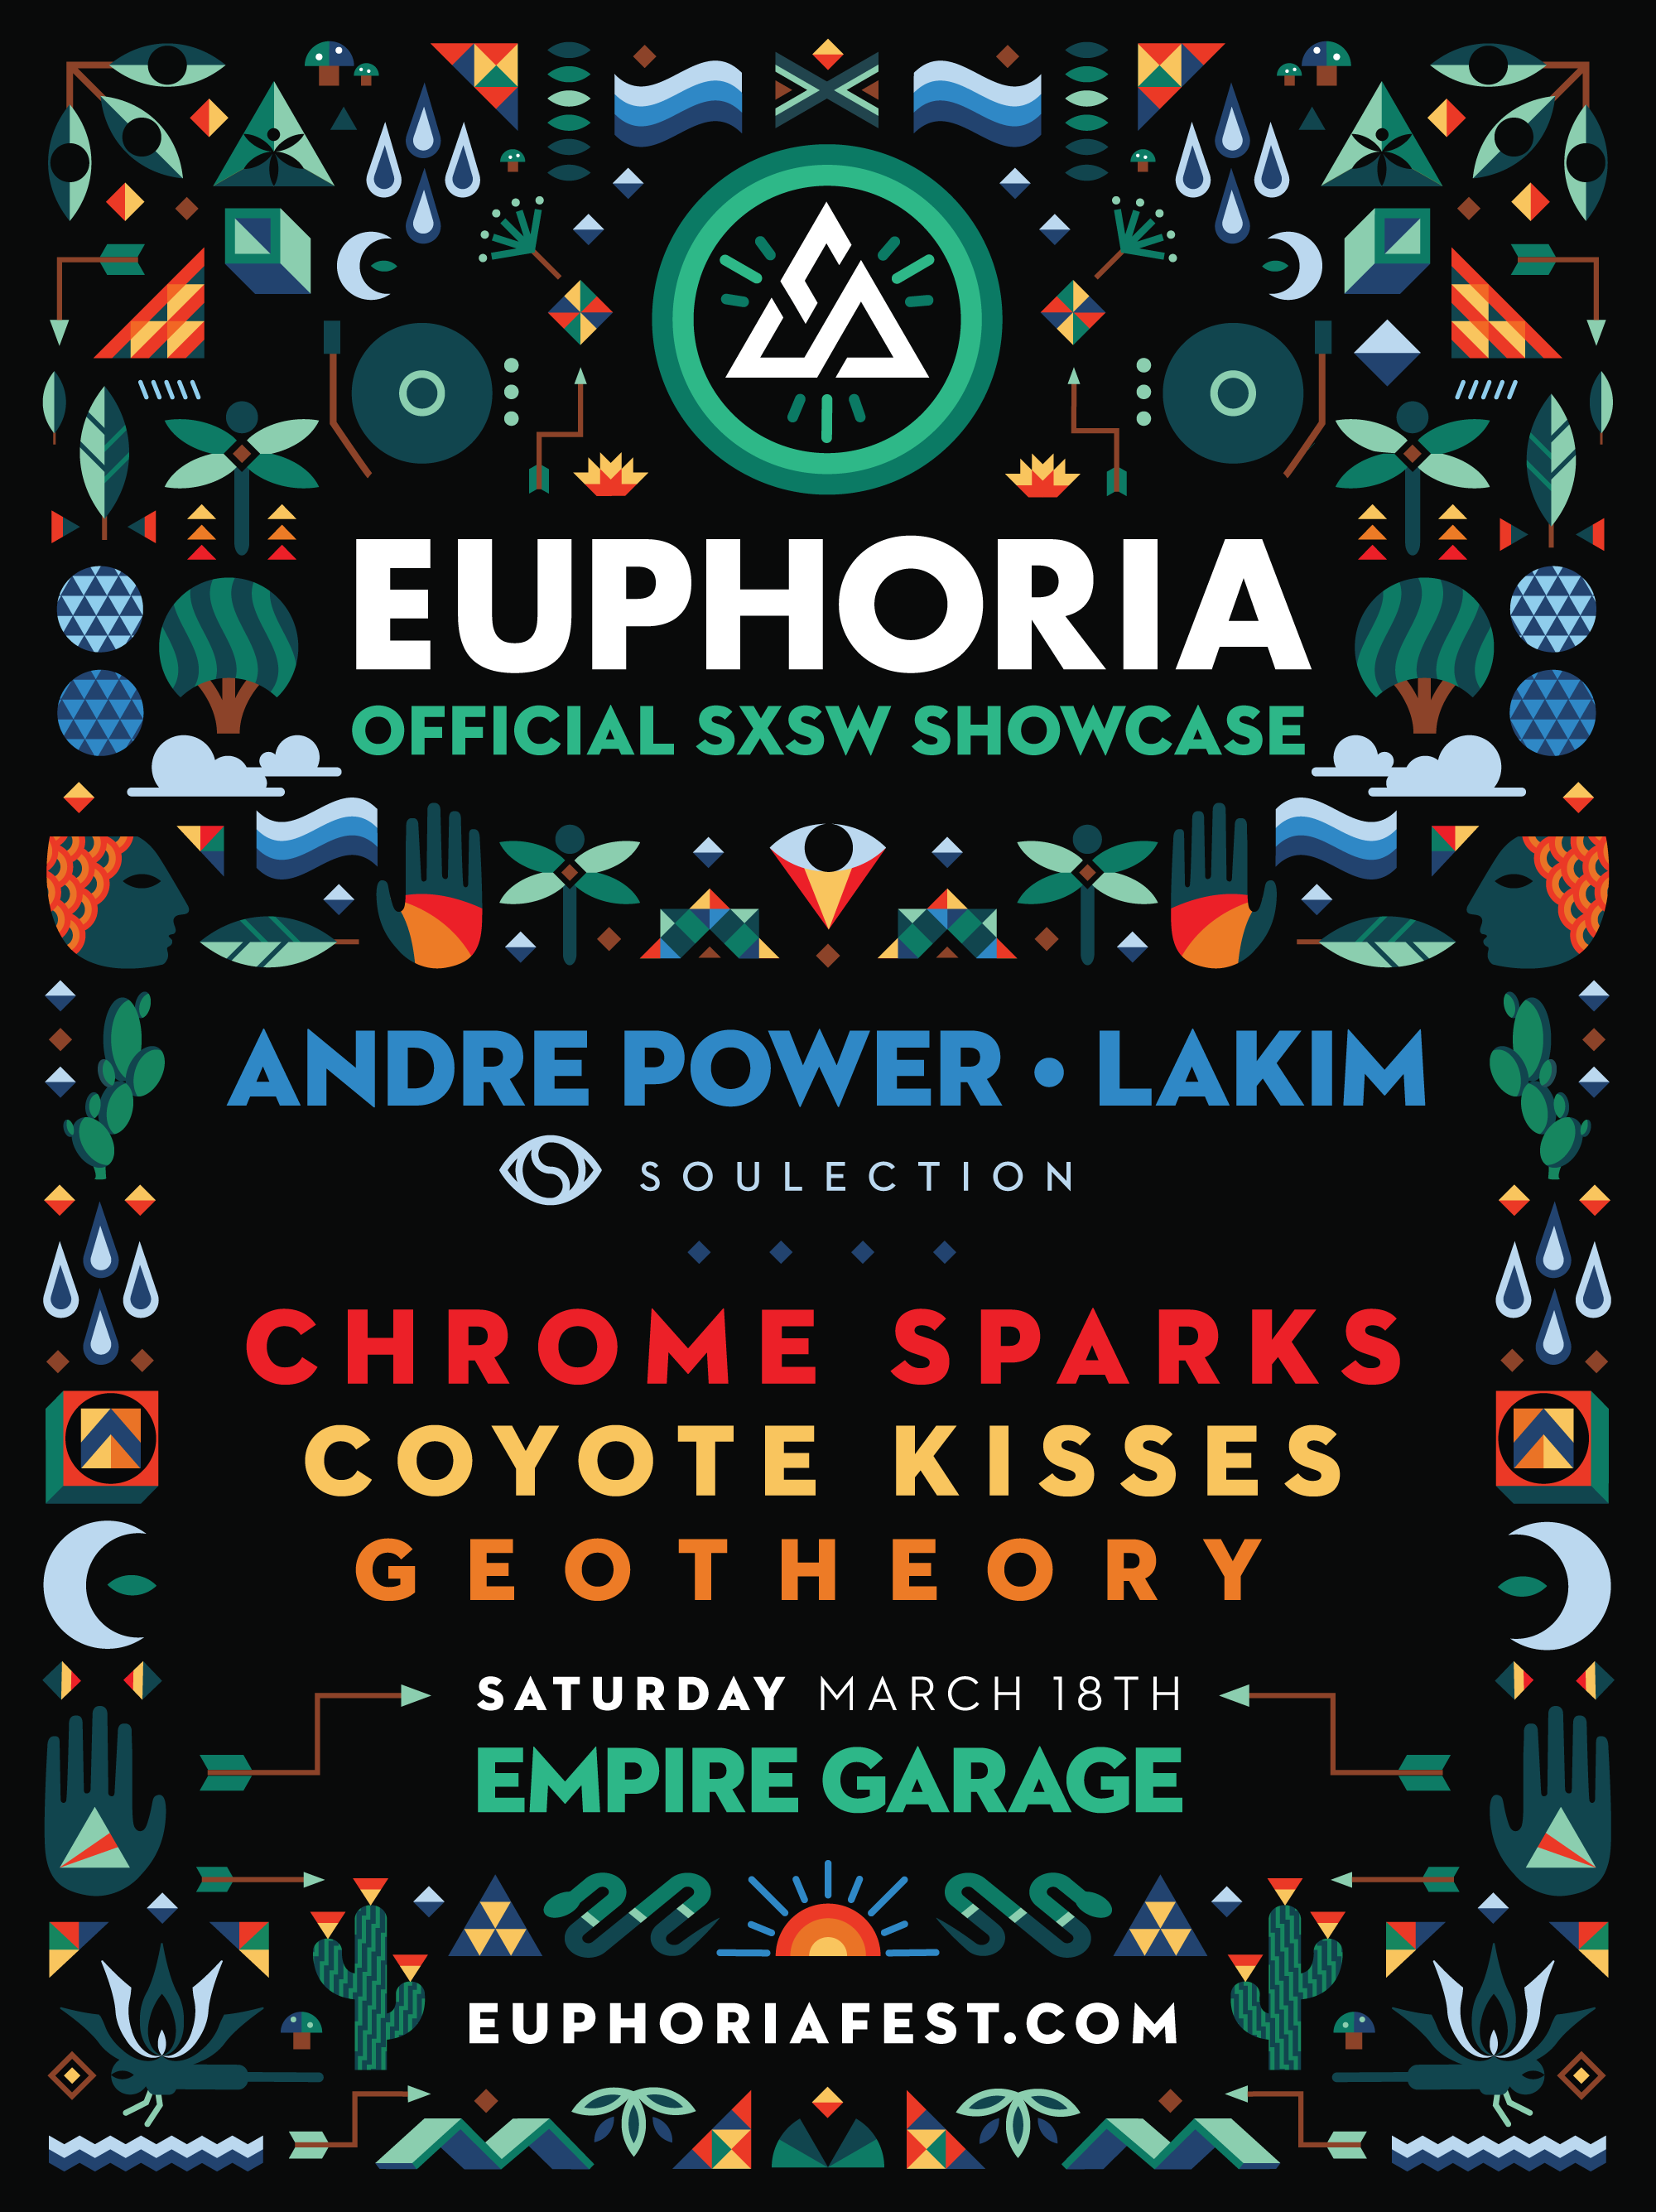 Euphoria music showcase at SXSW Music 2017. Photo provided.